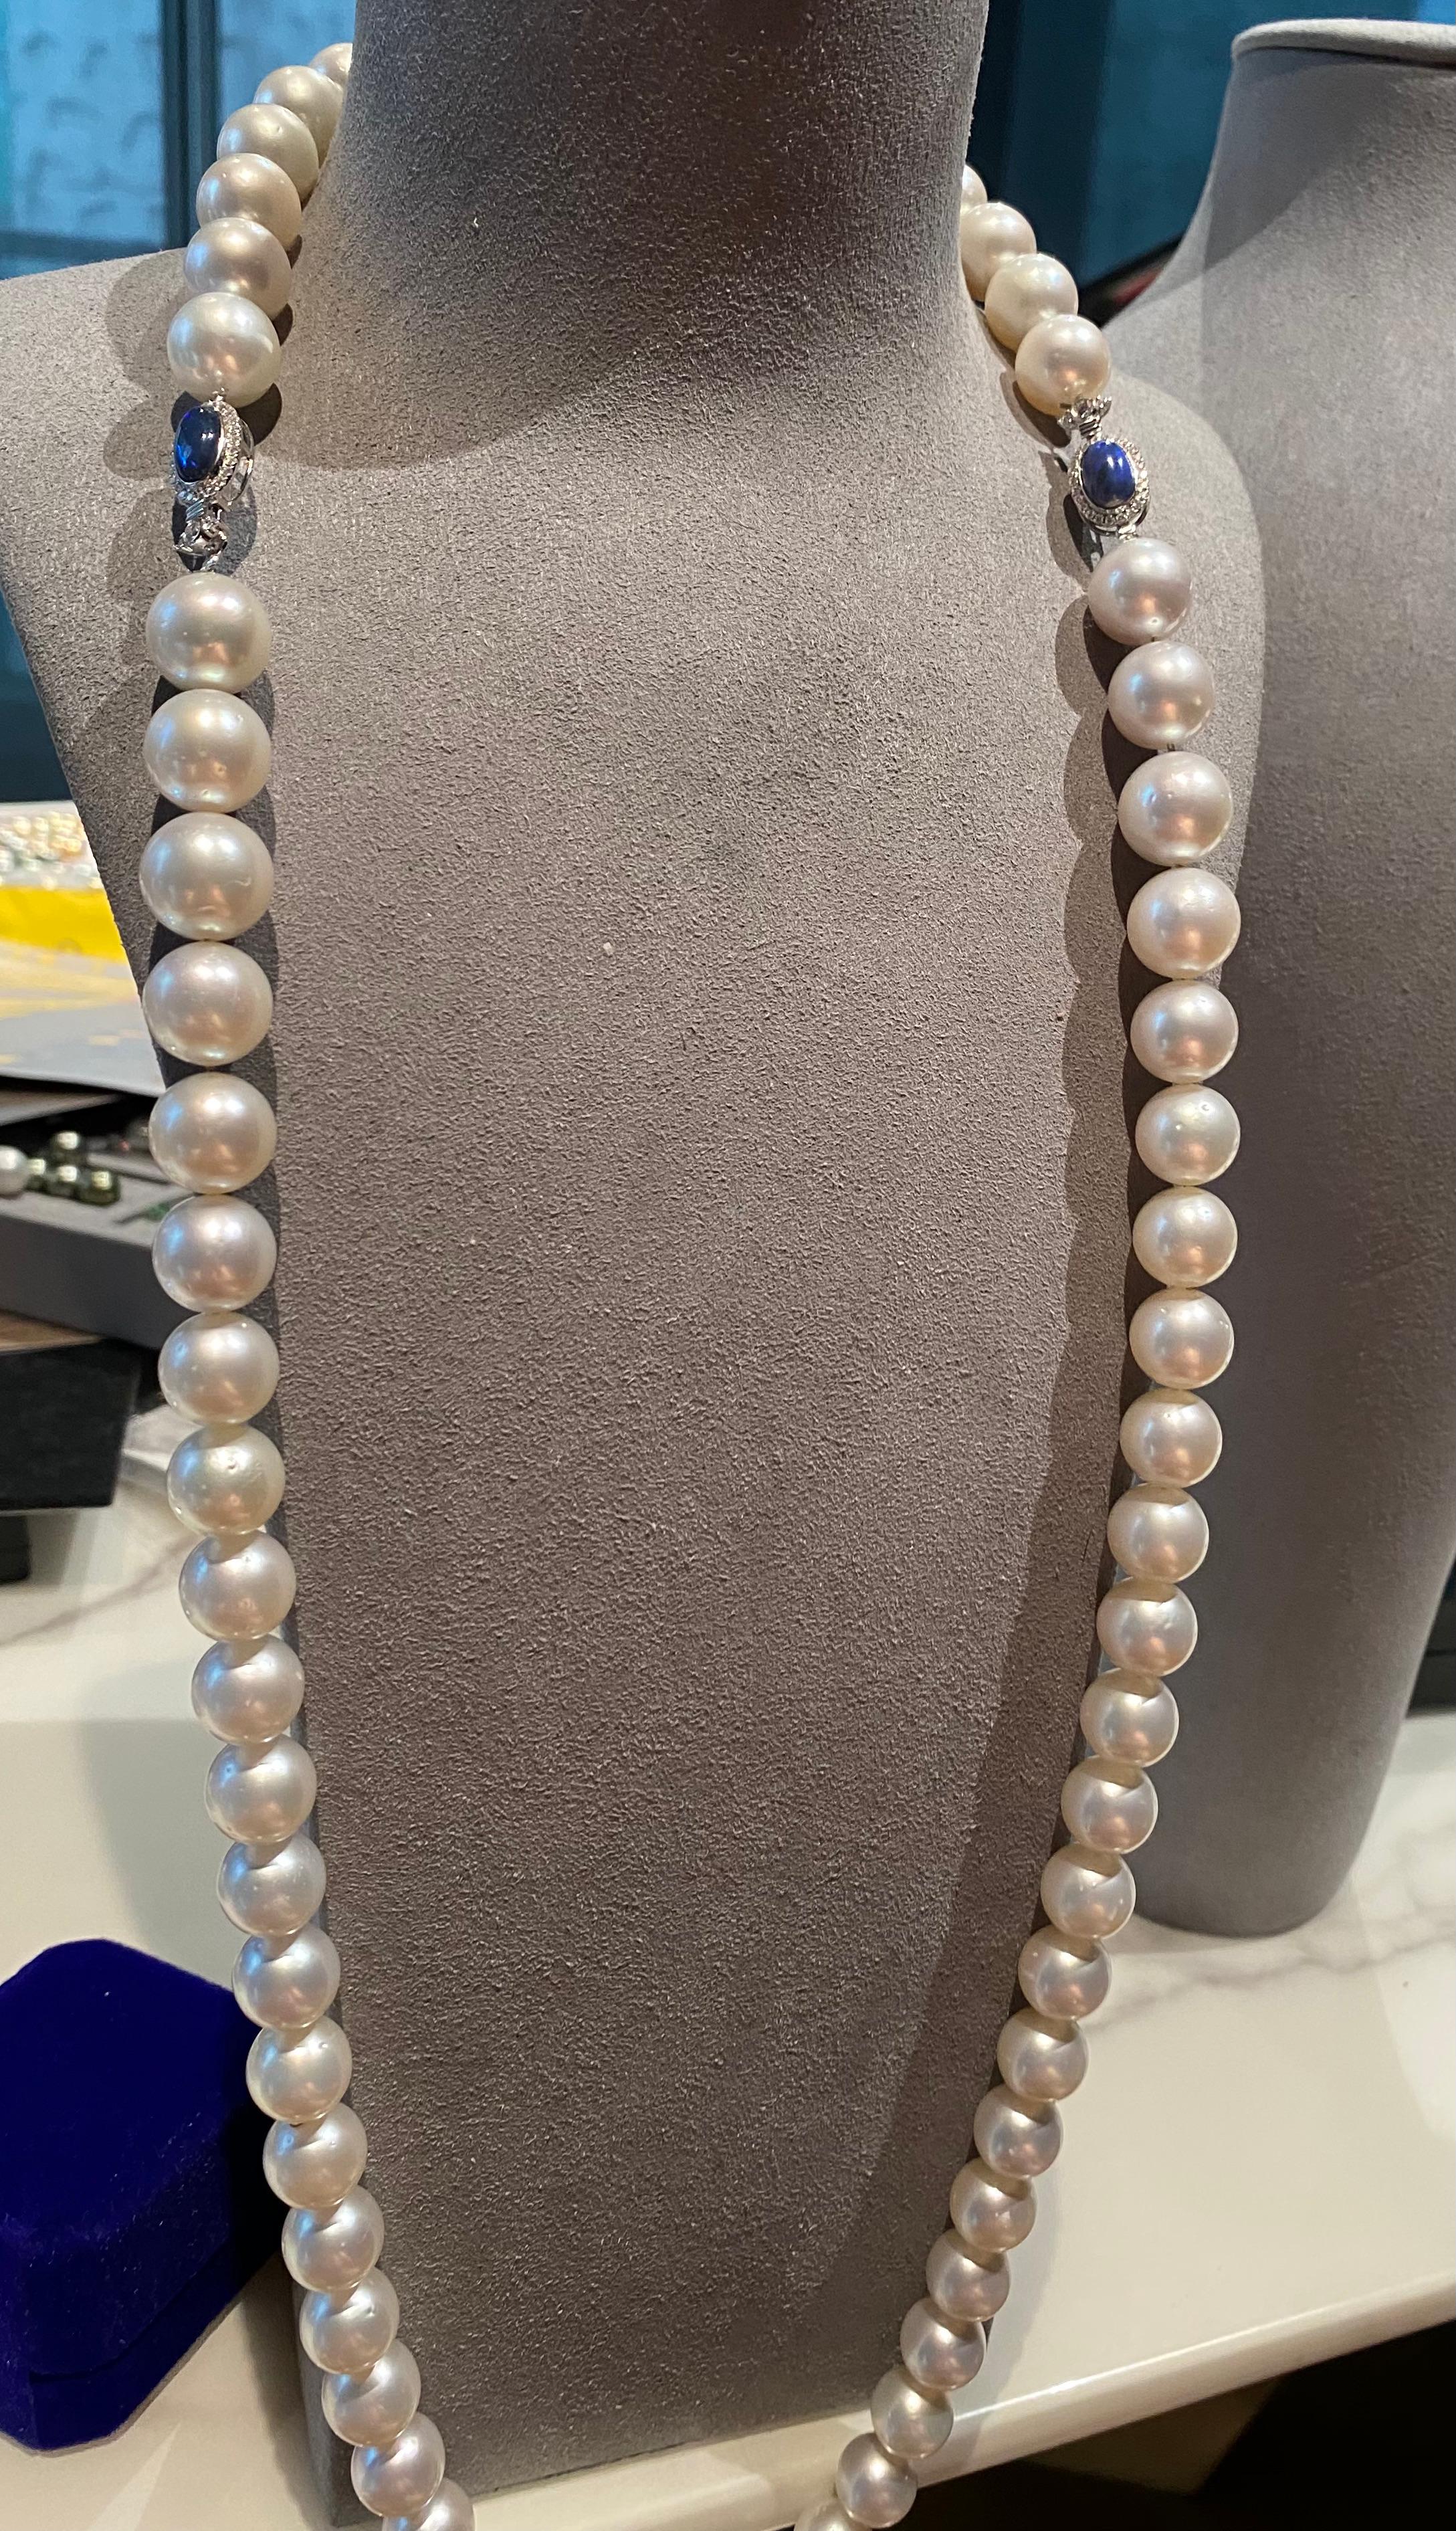 Il s'agit d'un collier de perles blanches des mers du Sud de qualité supérieure, avec deux opales noires solides d'Australie comme fermoirs. Le collier de perles est composé de 66 perles rondes des mers du Sud. Ce collier peut être porté de